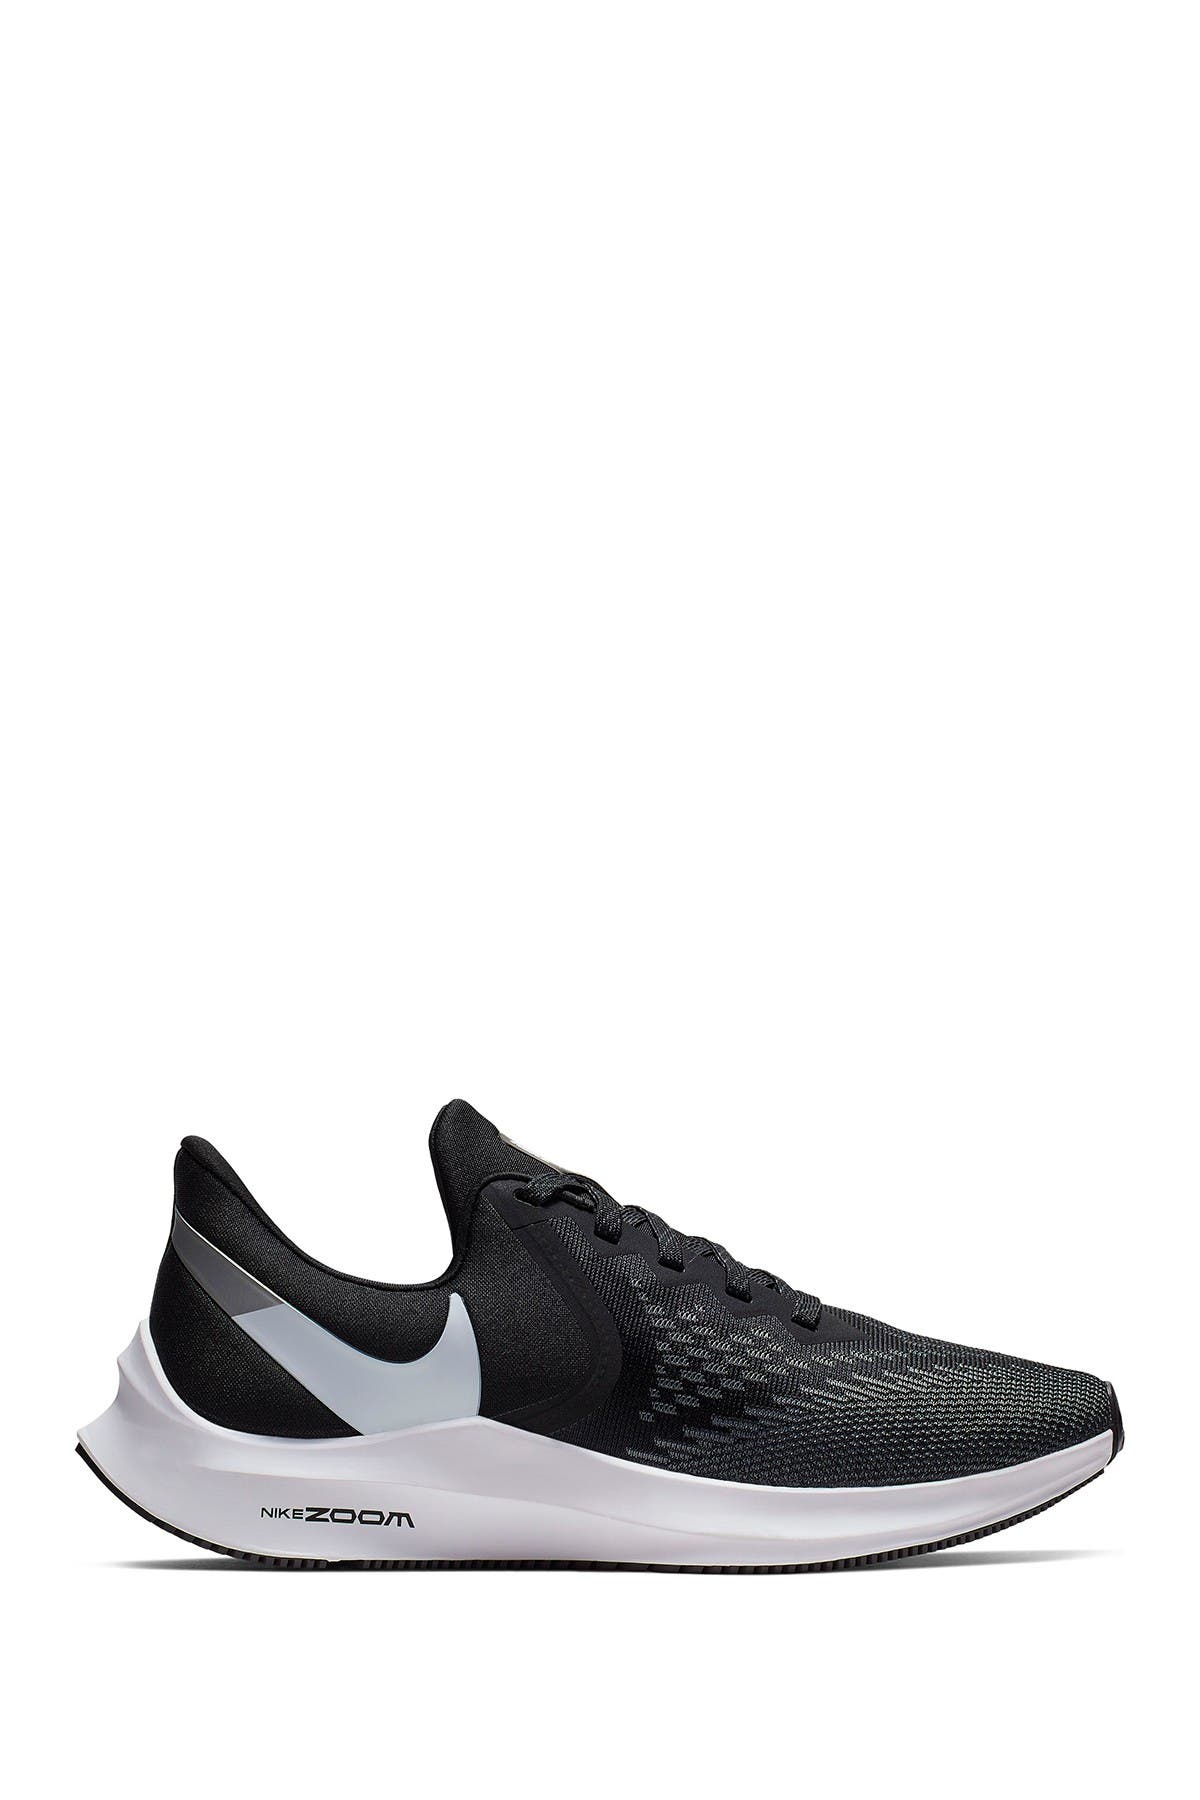 Nike | Zoom Winflo 6 Sneaker | HauteLook